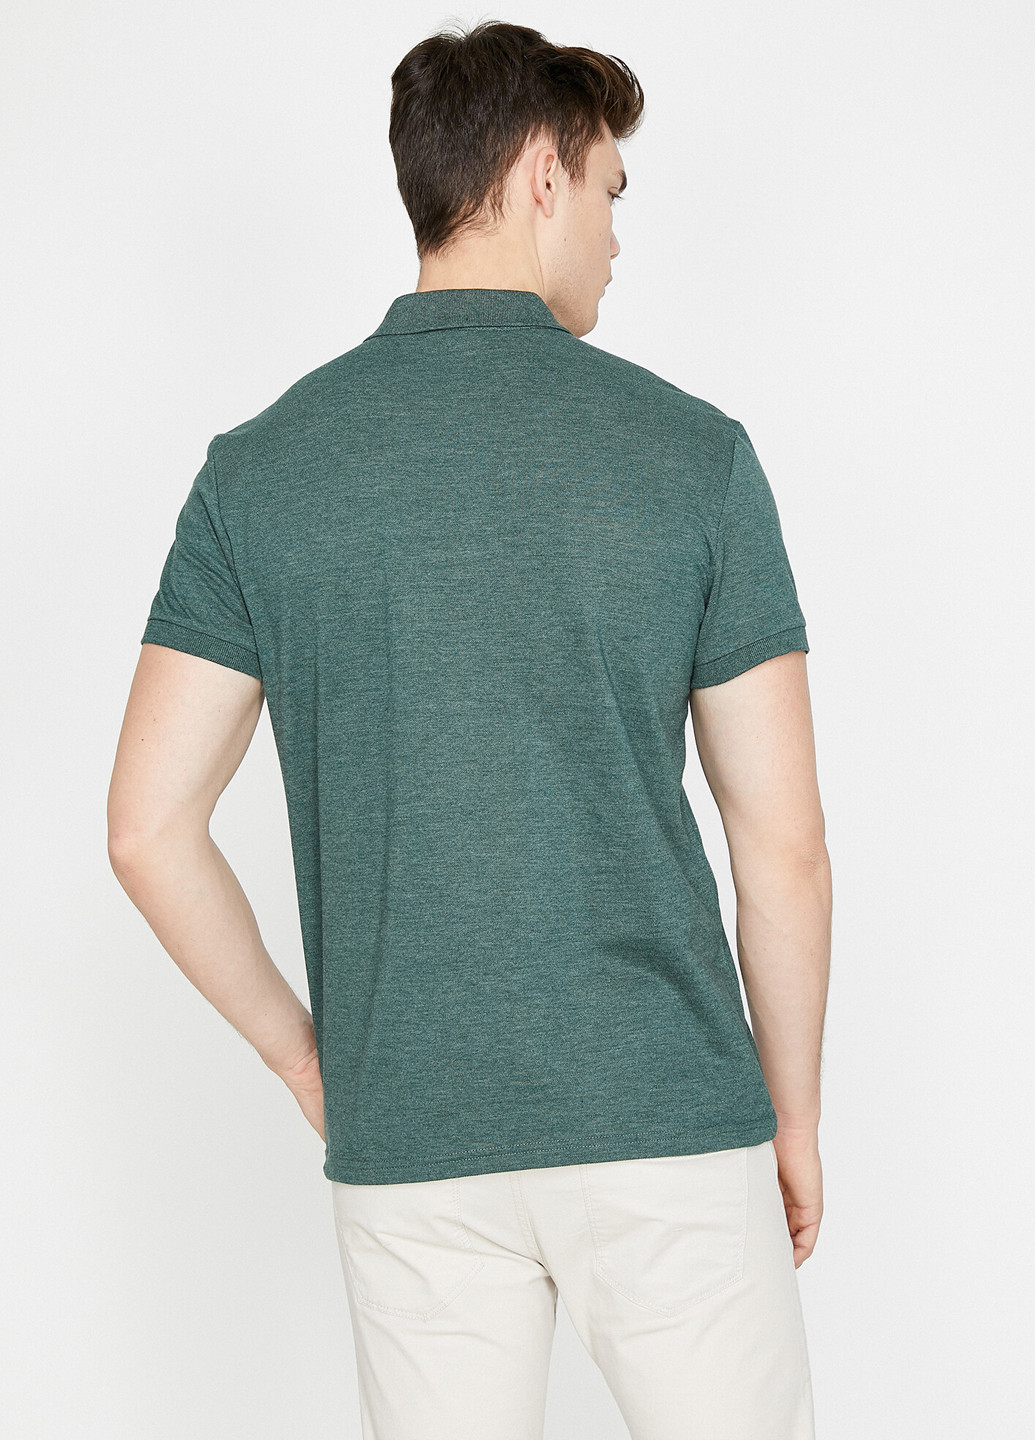 Зеленая футболка-поло для мужчин KOTON меланжевая